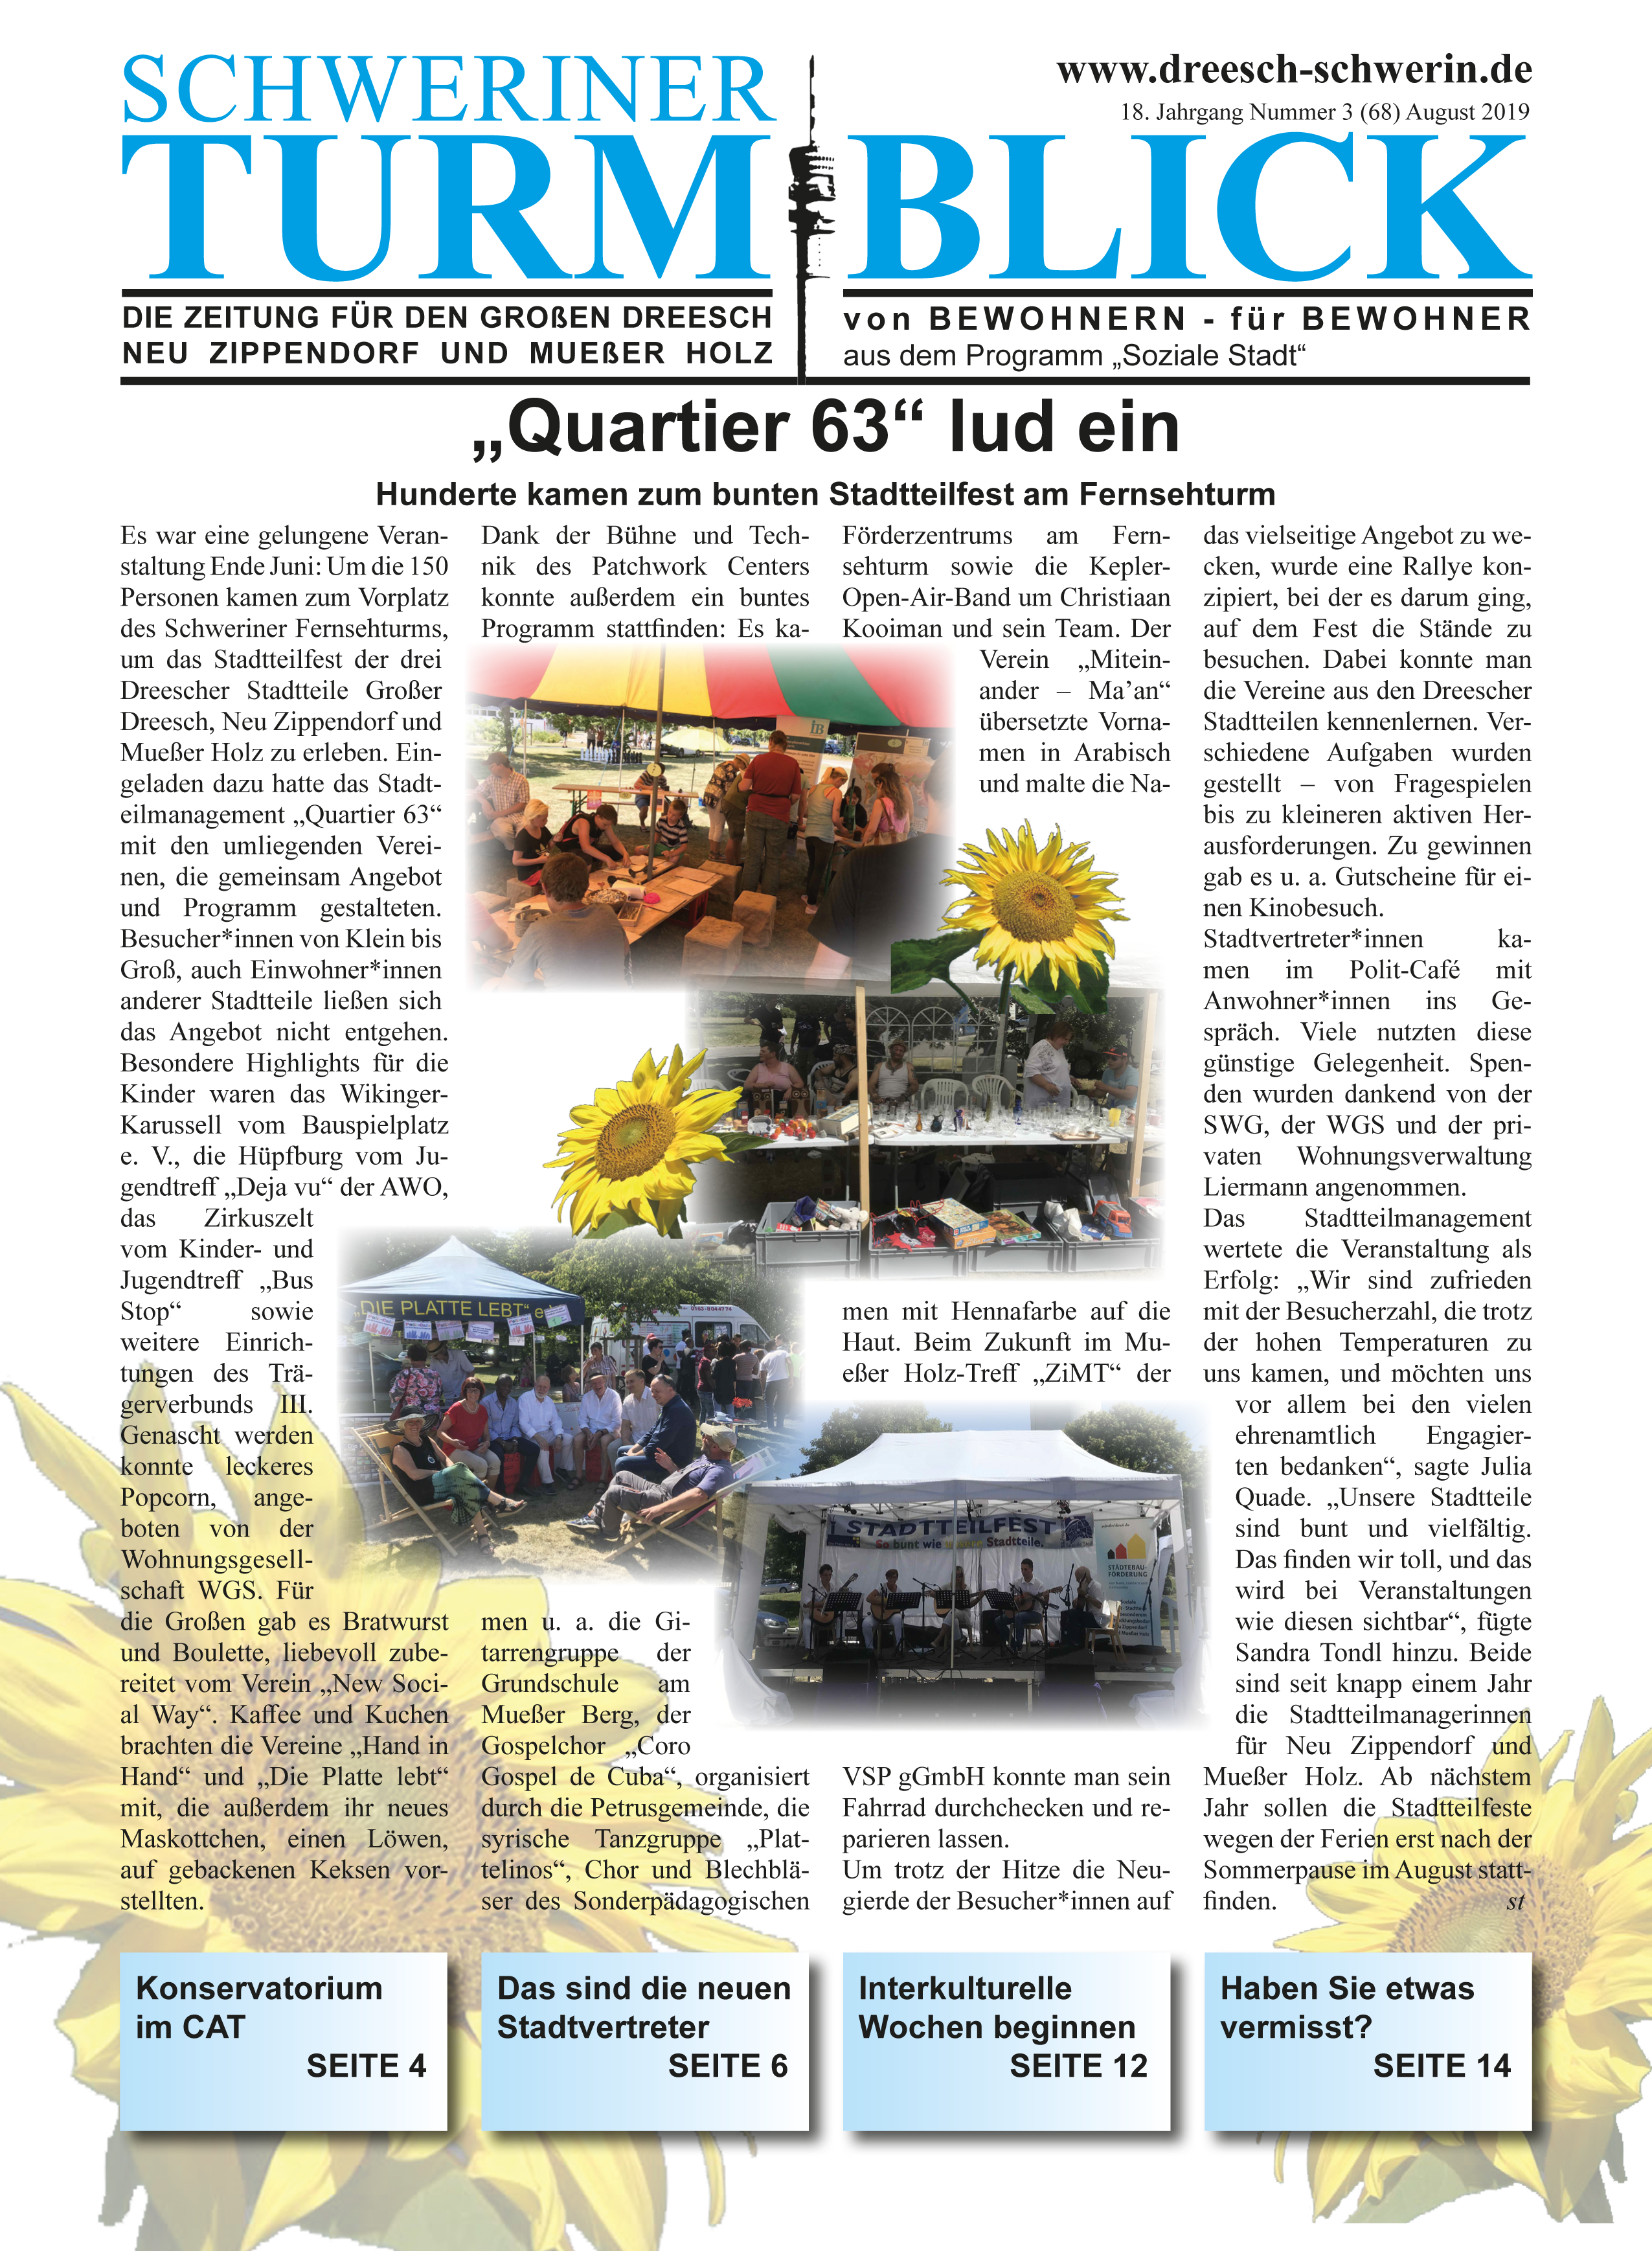 Schweriner Turmblick Ausgabe August 2019